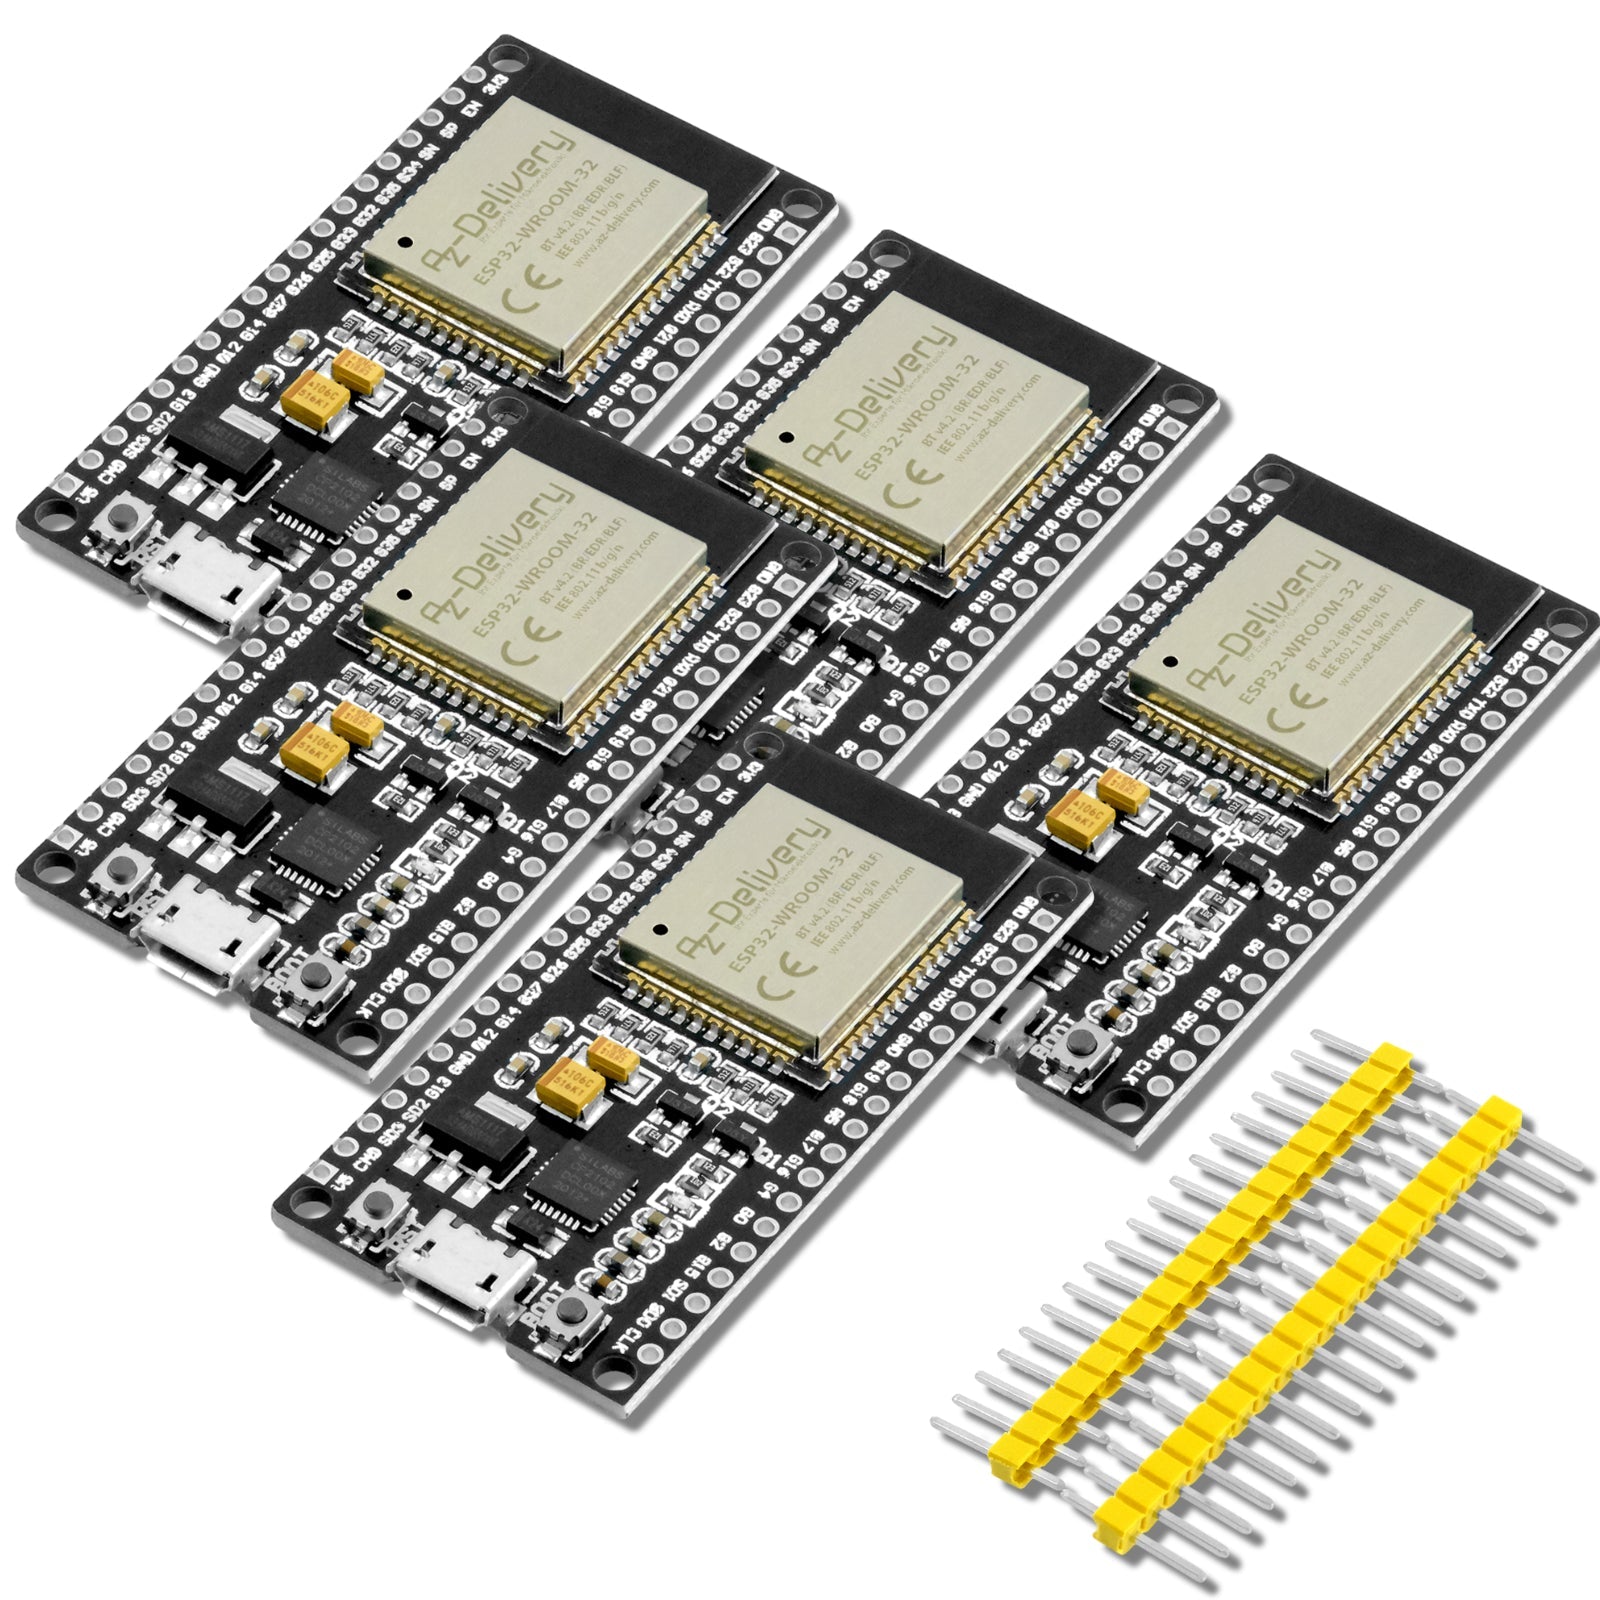 ESP32 Dev Kit C unverlötet kompatibel mit Arduino - AZ-Delivery